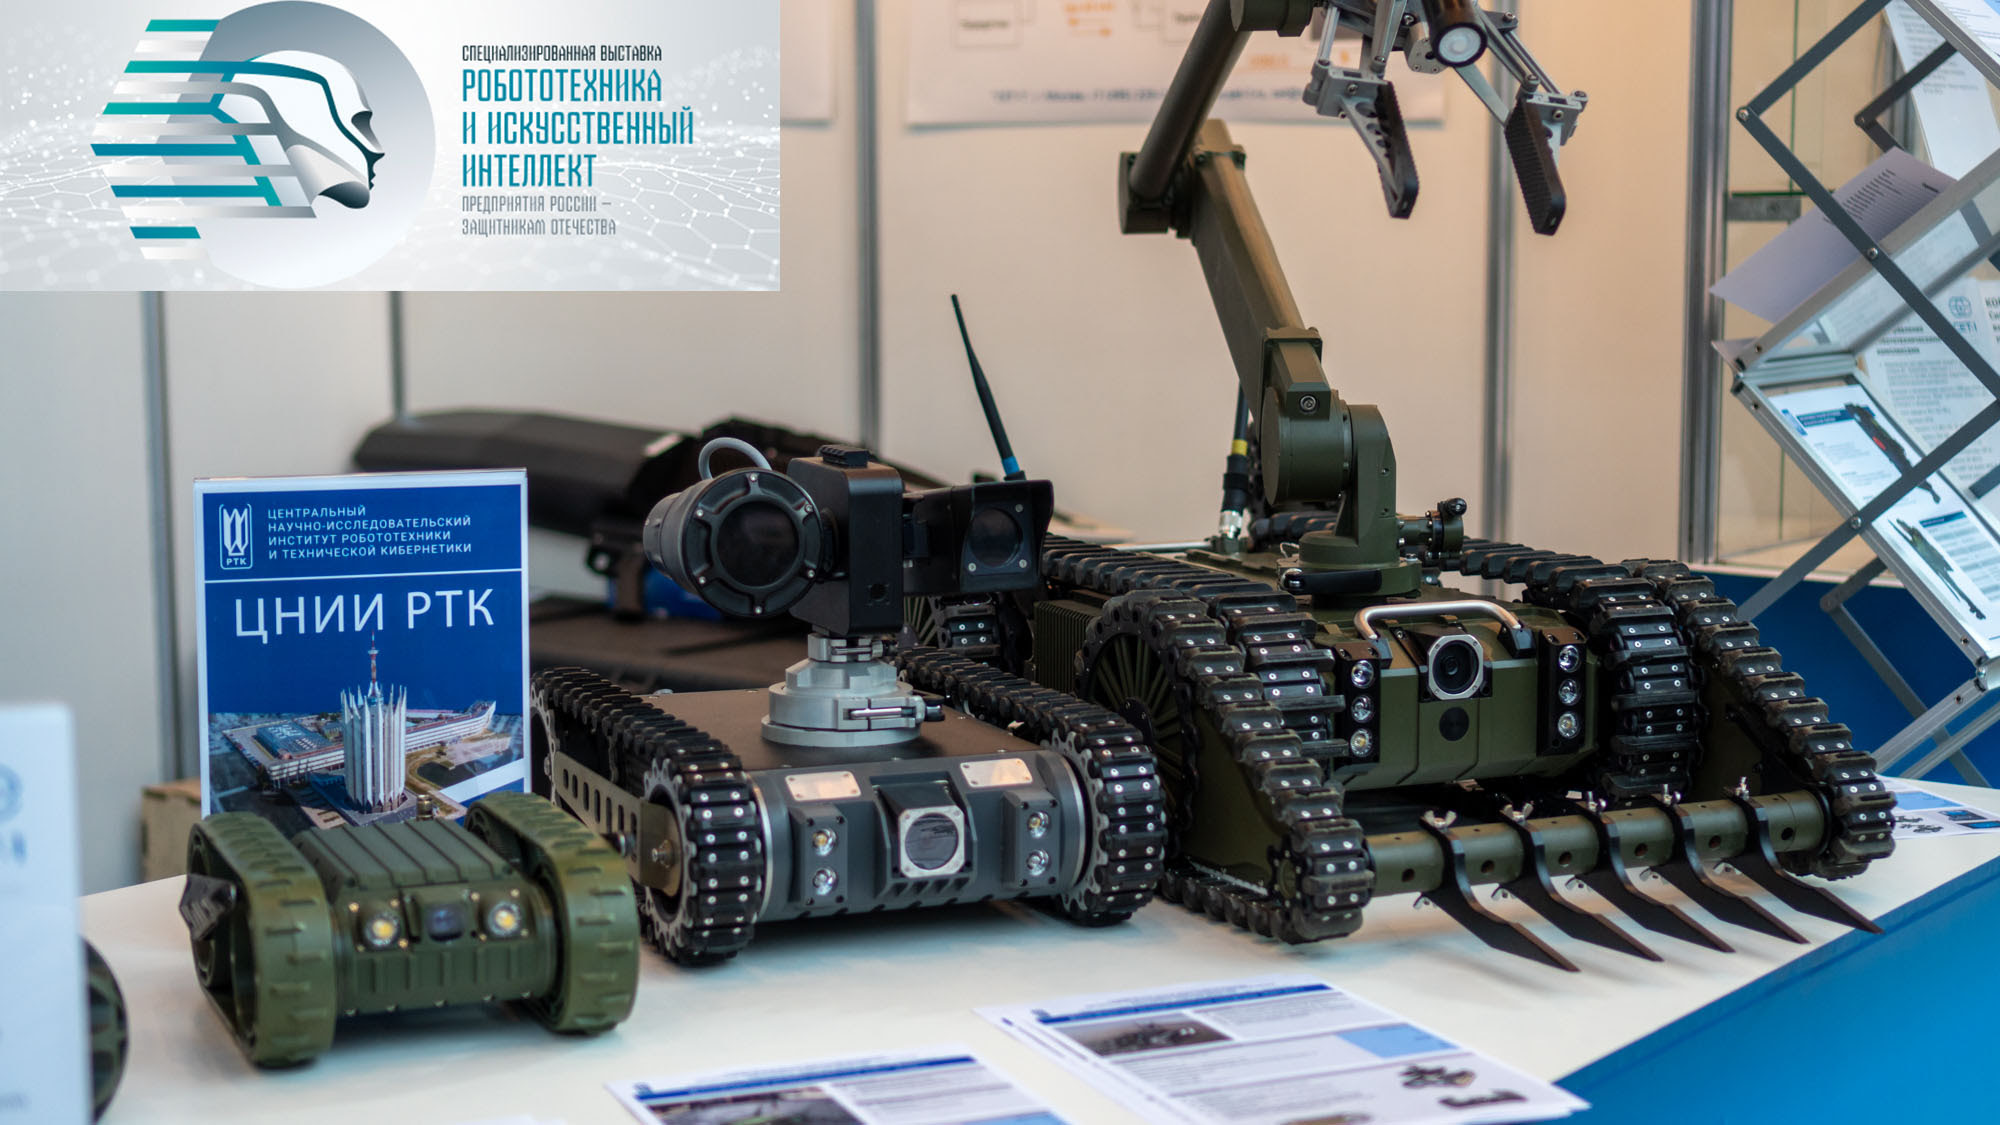 В период с 29 по 30 июня 2023 года на территории ВДНХ (павильон №55) состоится Специализированная выставка «Робототехника и искусственный интеллект»